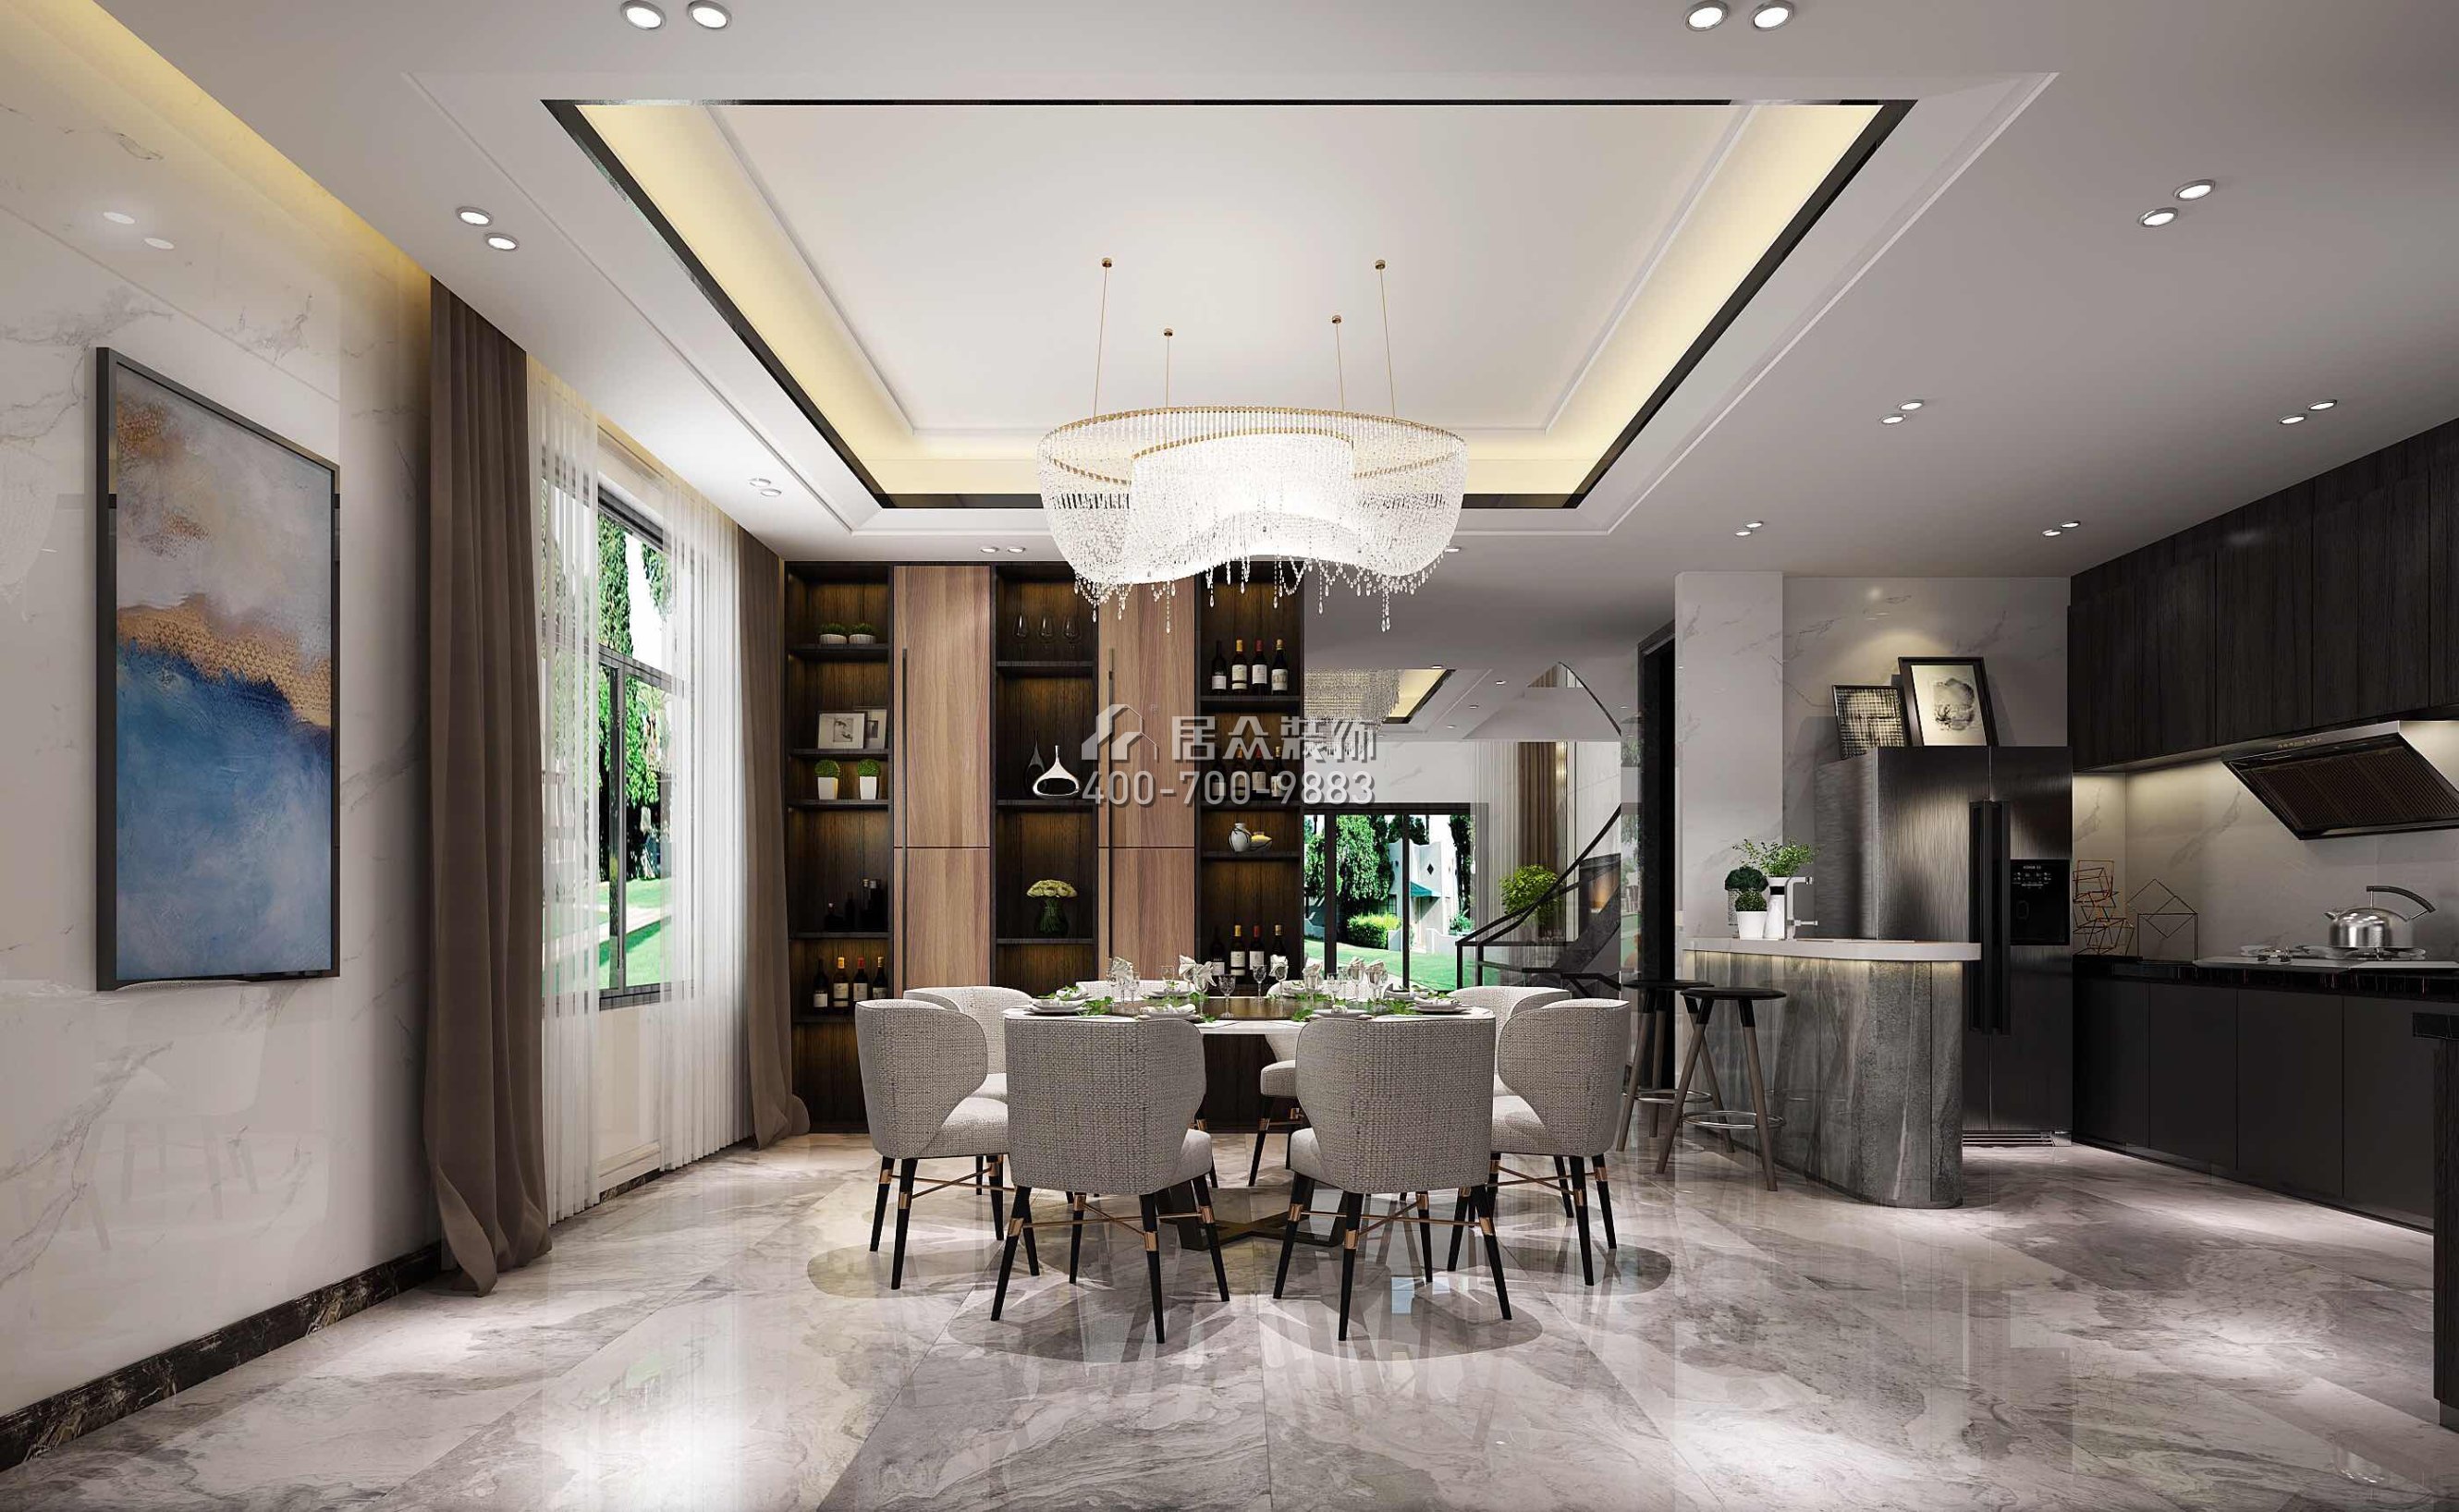 龙光水悦龙湾500平方米现代简约风格别墅户型餐厅装修效果图